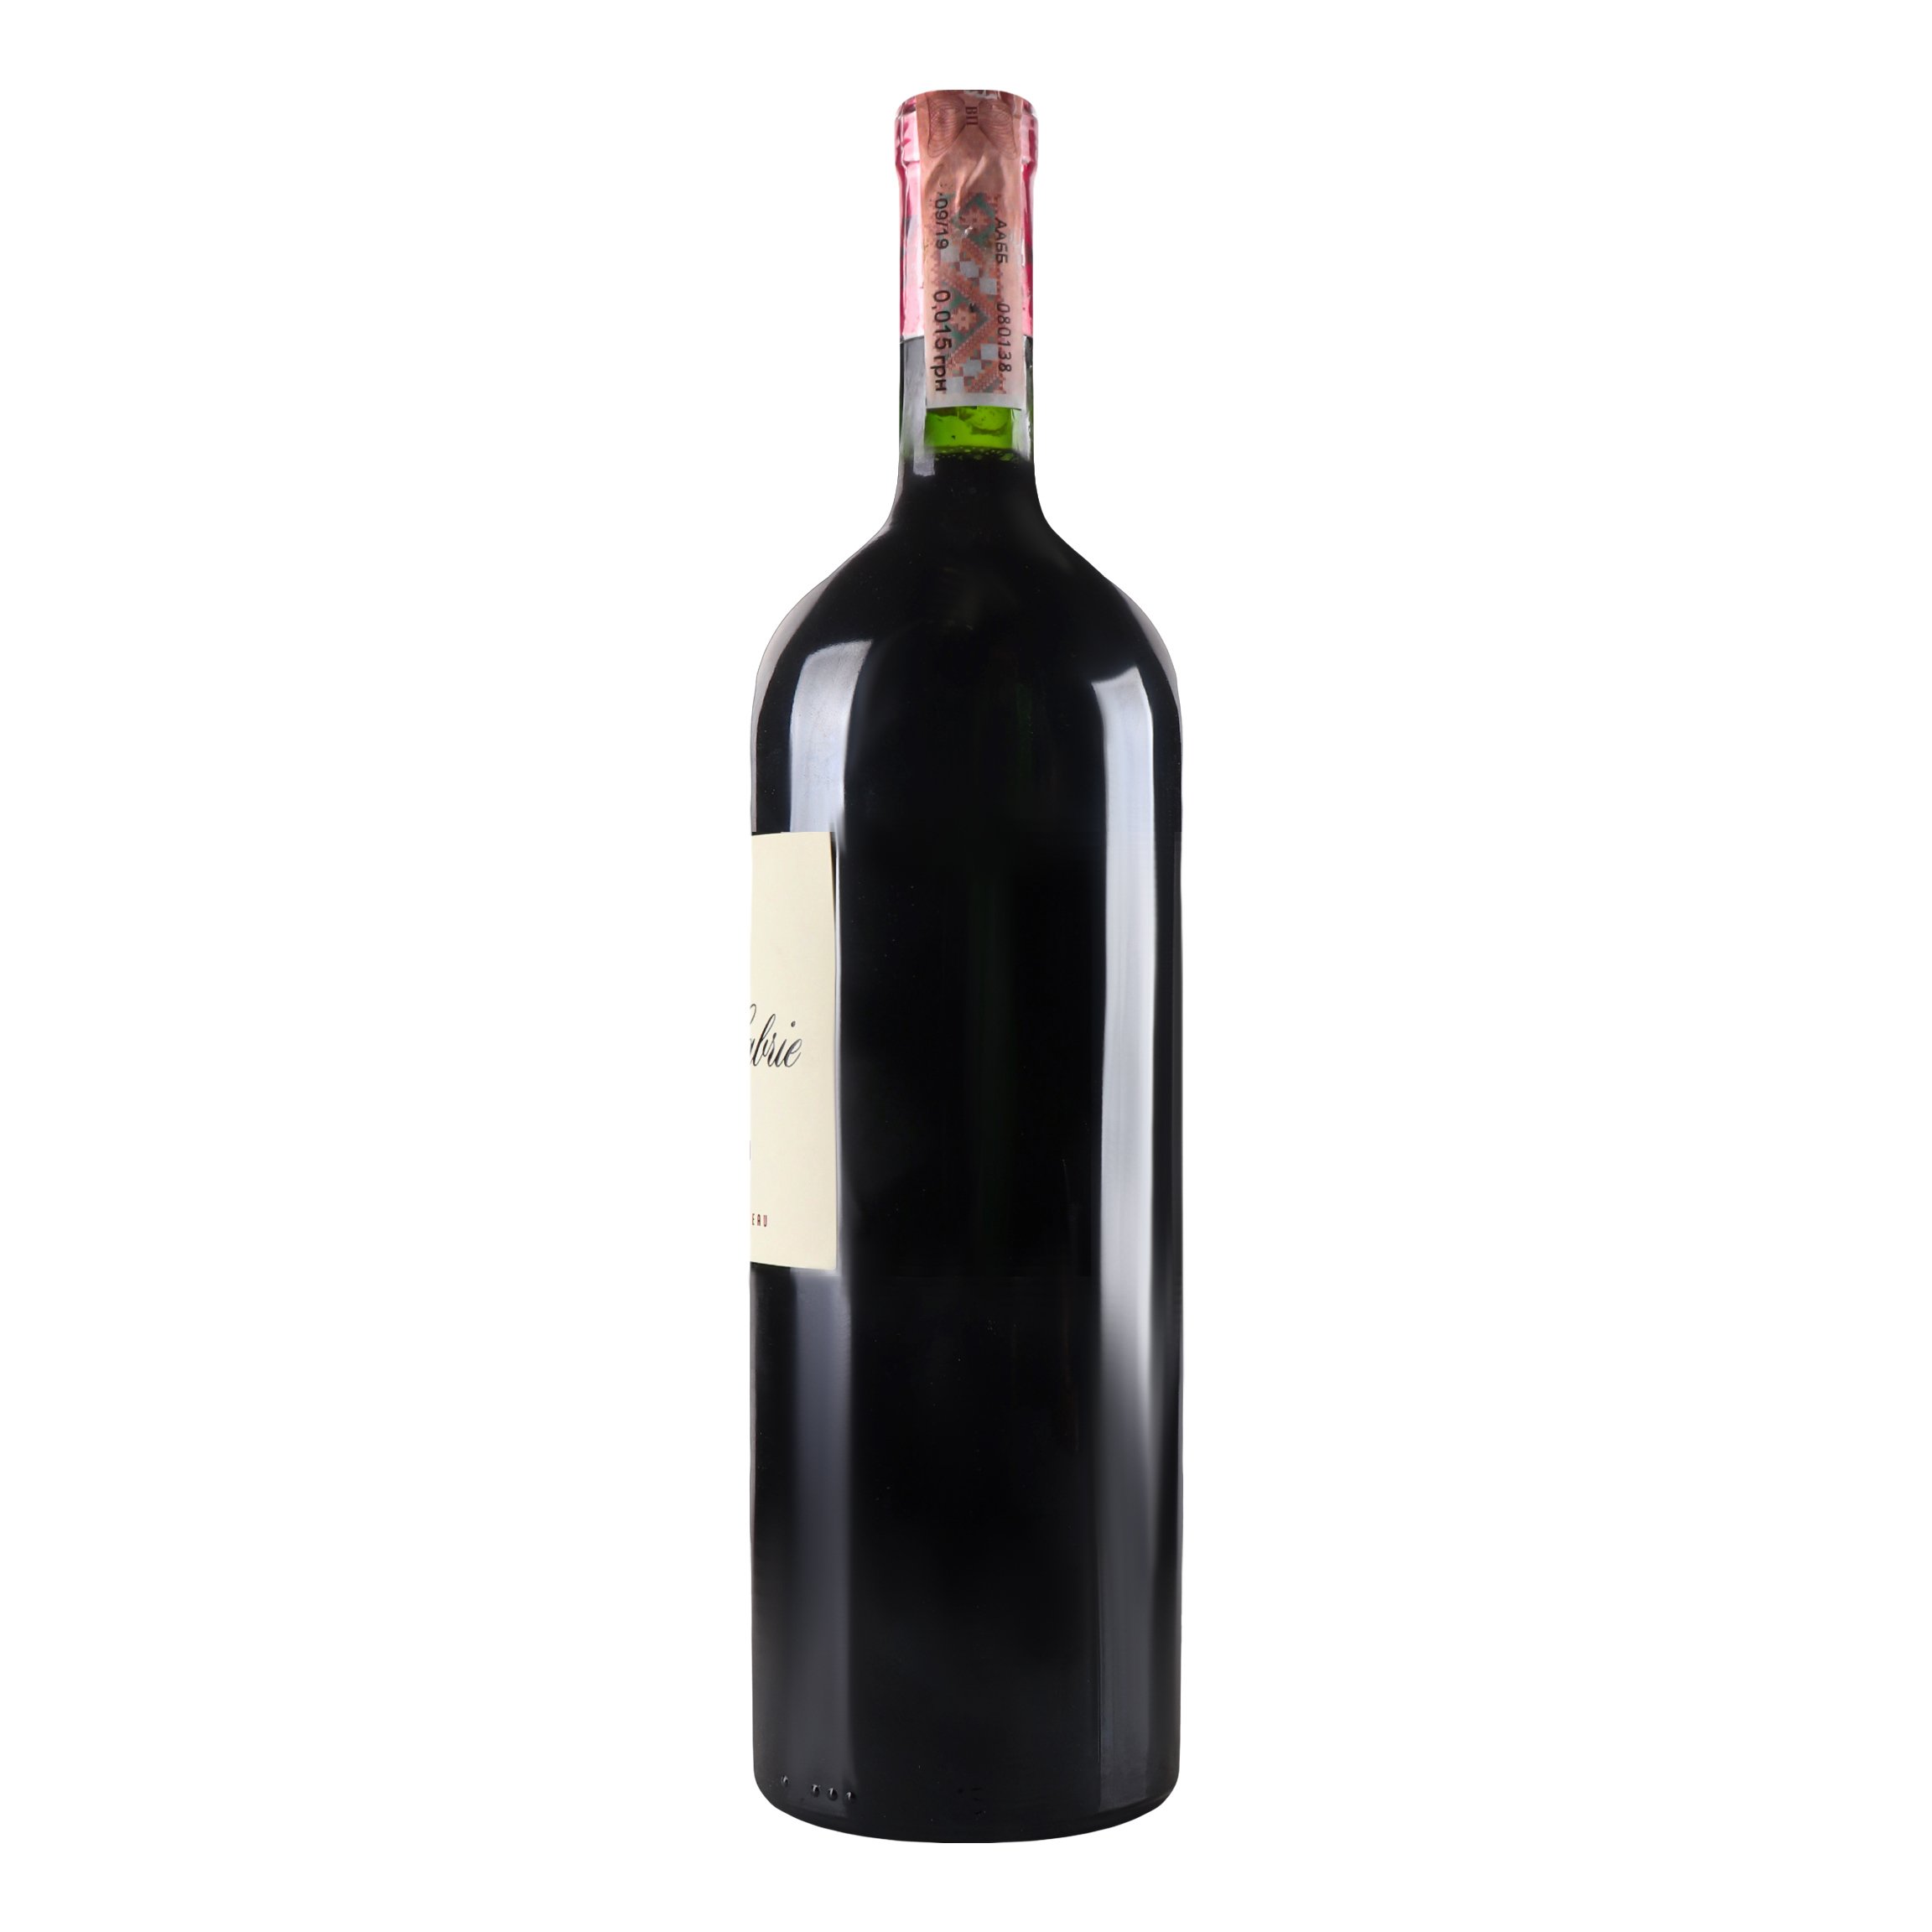 Вино Chateau Croix de Labrie Saint Emilion Grand Cru 2017 AOC, красное, сухое, 14%, 1,5 л (819350) - фото 3